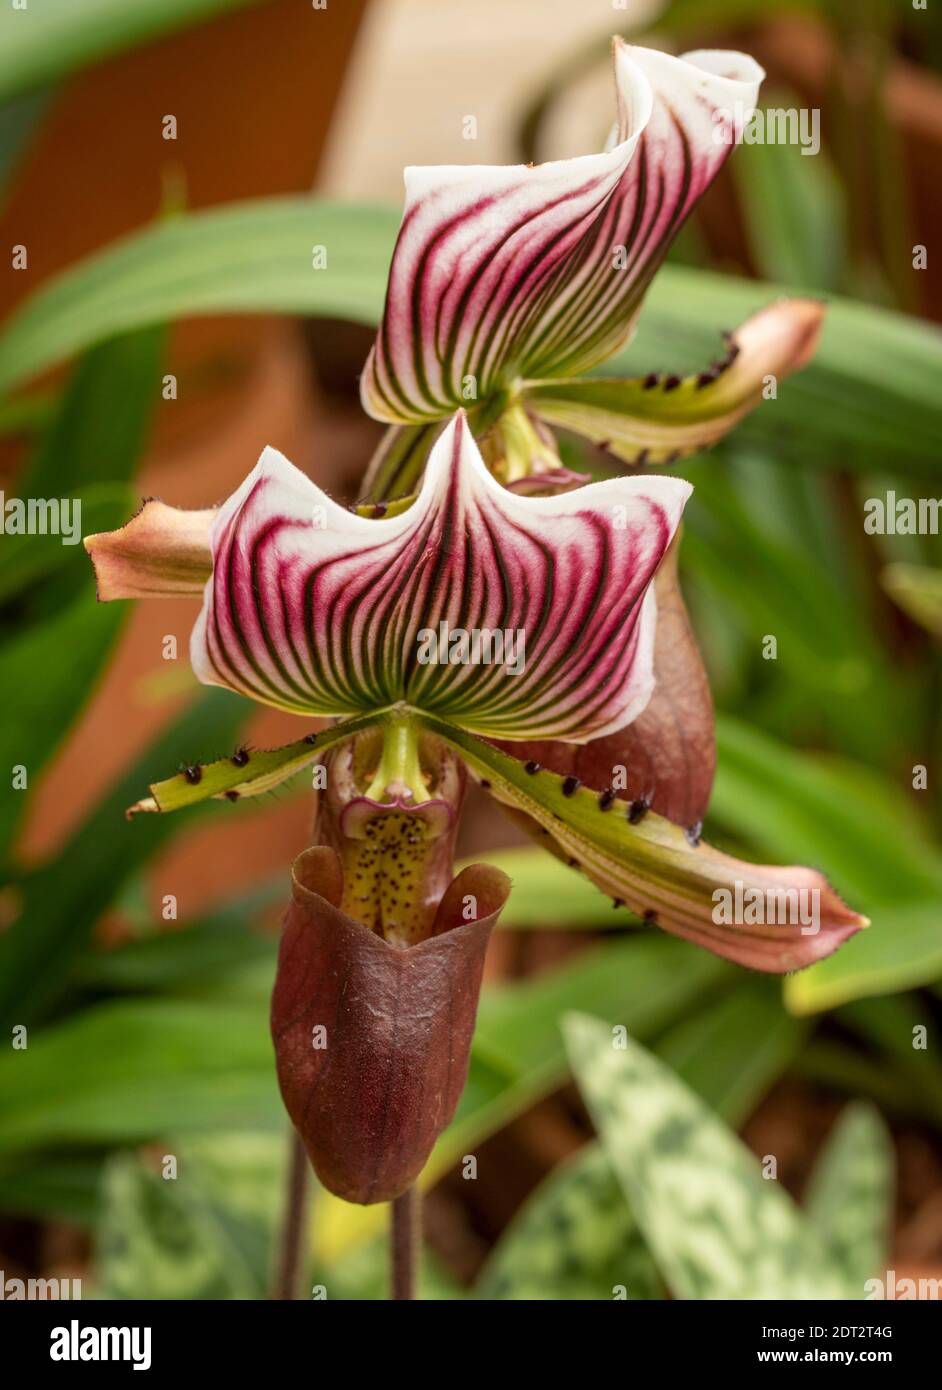 Paphiopedilum Callosum 'Imperial Purple' flowering, natural flower portrait Stock Photo